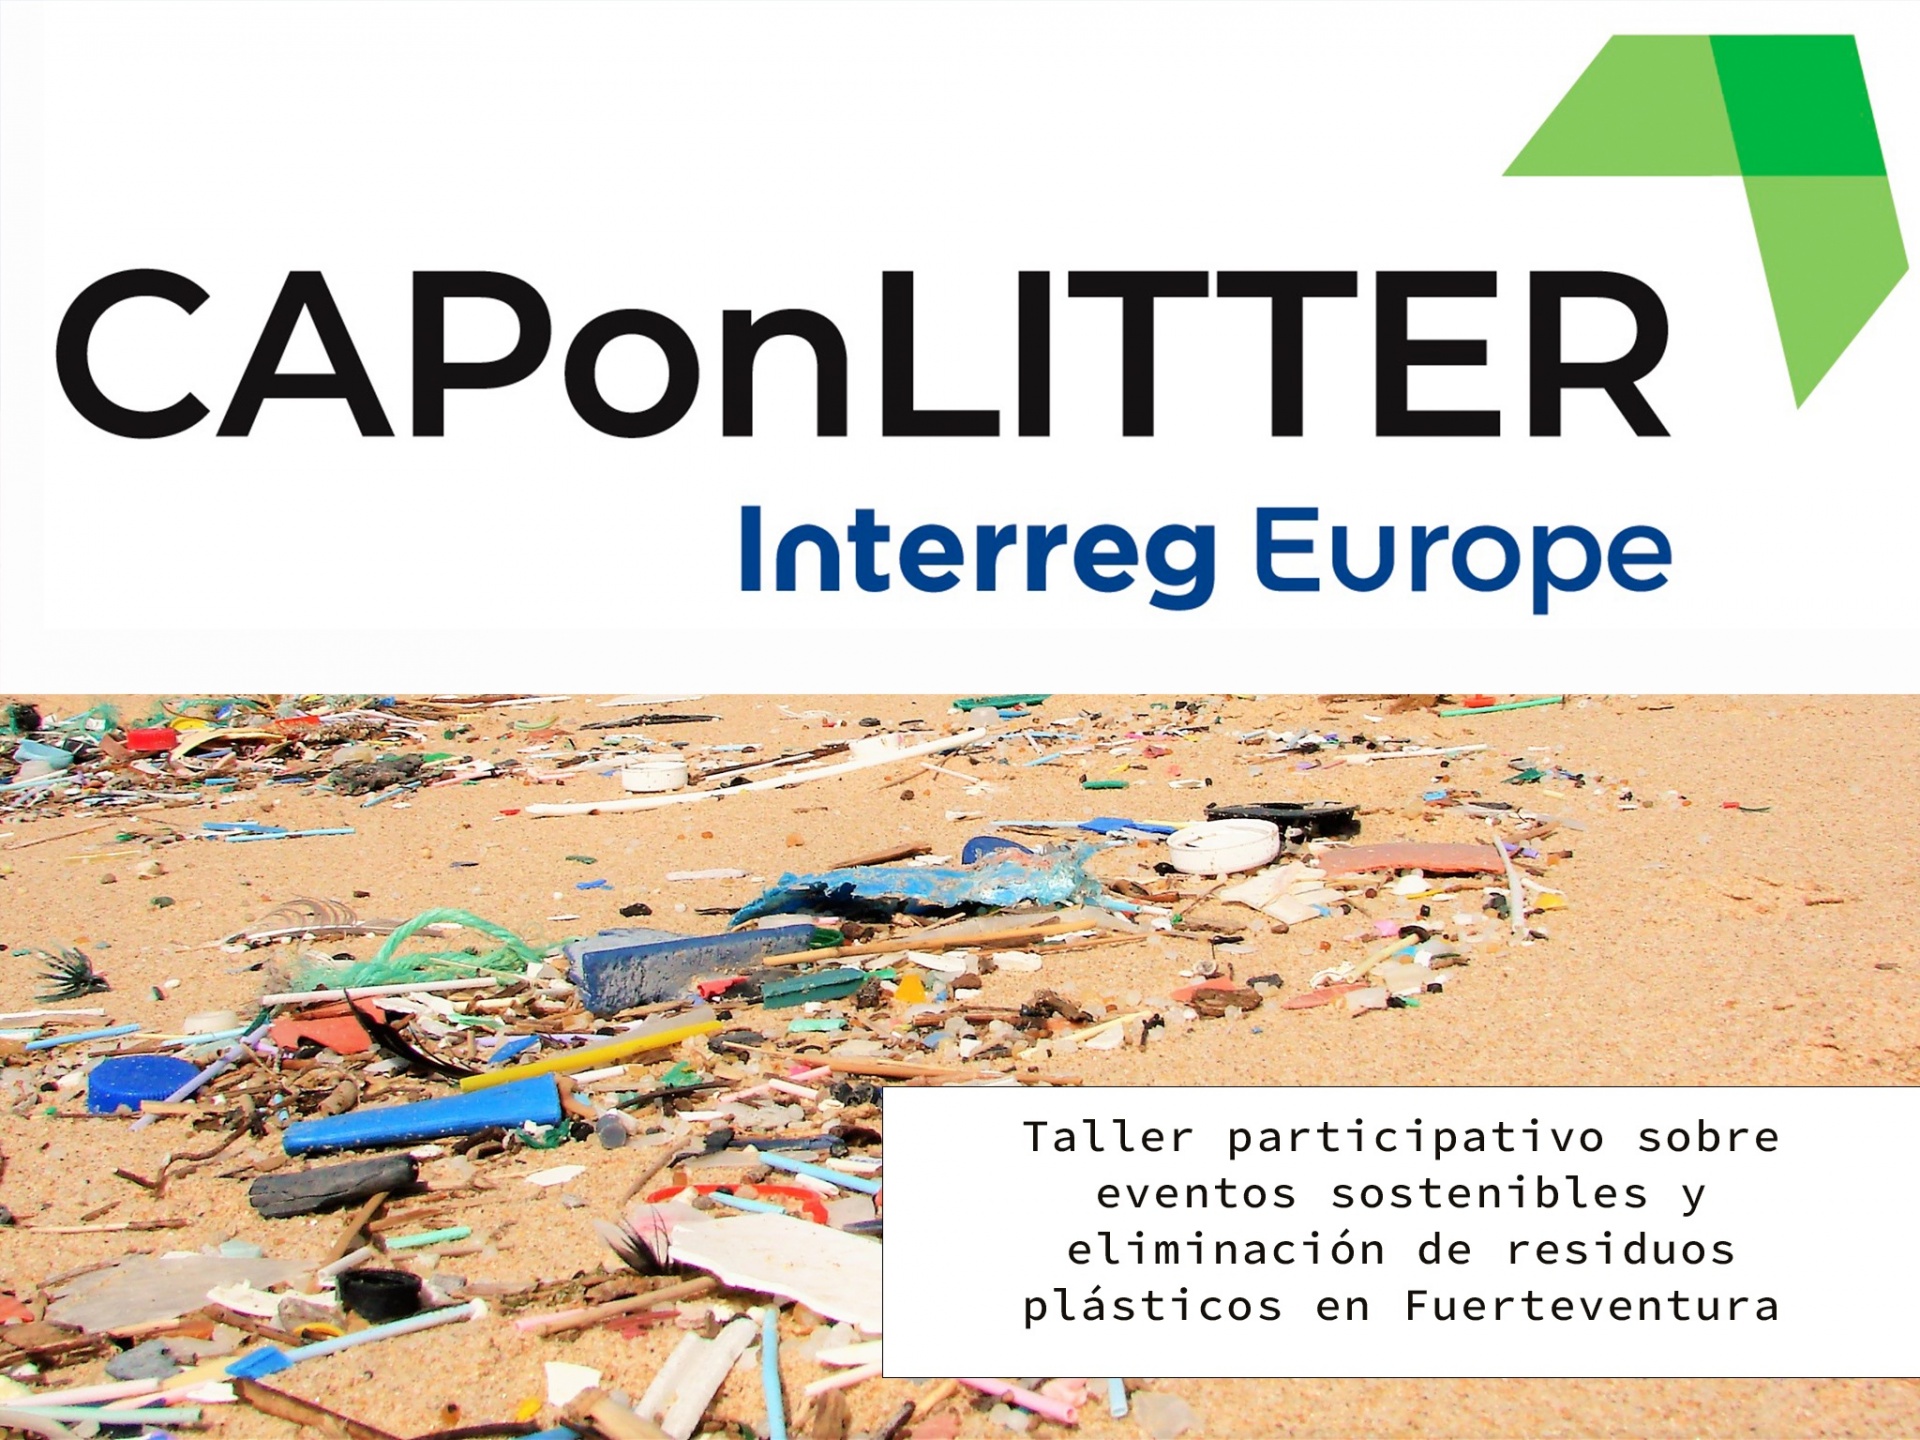 Taller participativo sobre eventos sostenibles y eliminación de residuos plásticos del proyecto CAPonLITTER